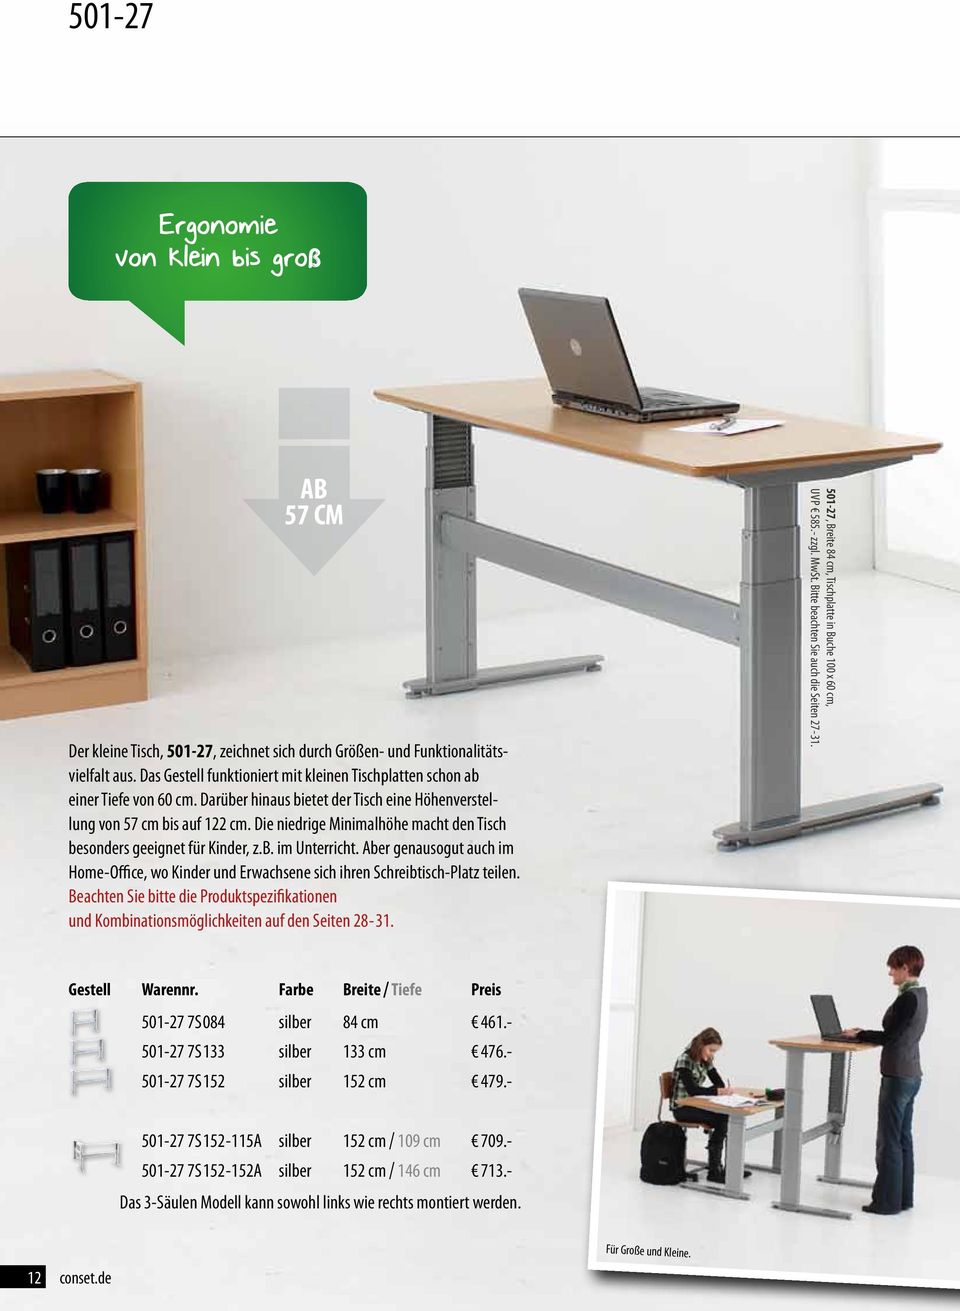 Die niedrige Minimalhöhe macht den Tisch besonders geeignet für Kinder, z.b. im Unterricht. Aber genausogut auch im Home-Office, wo Kinder und Erwachsene sich ihren Schreibtisch-Platz teilen.